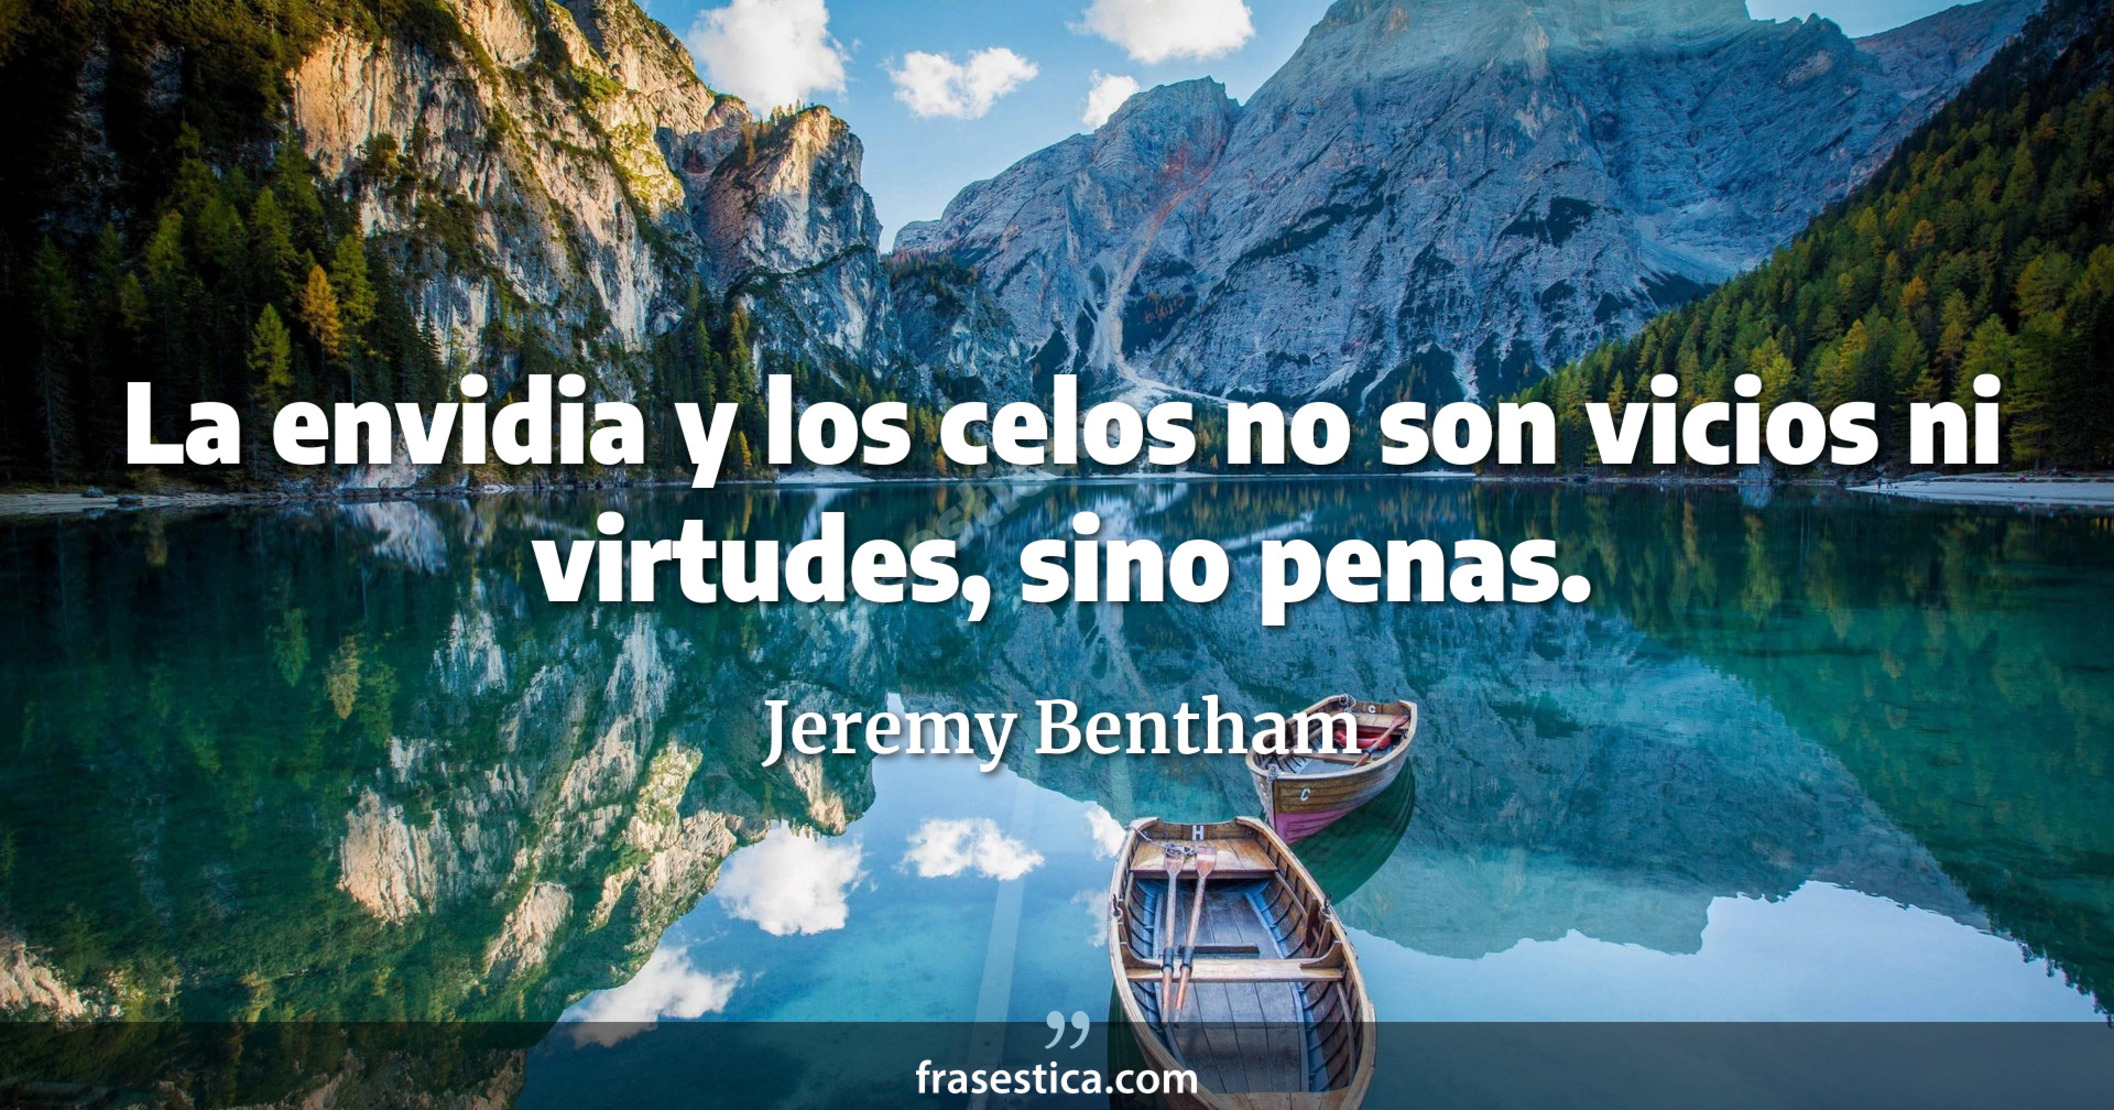 La envidia y los celos no son vicios ni virtudes, sino penas. - Jeremy Bentham